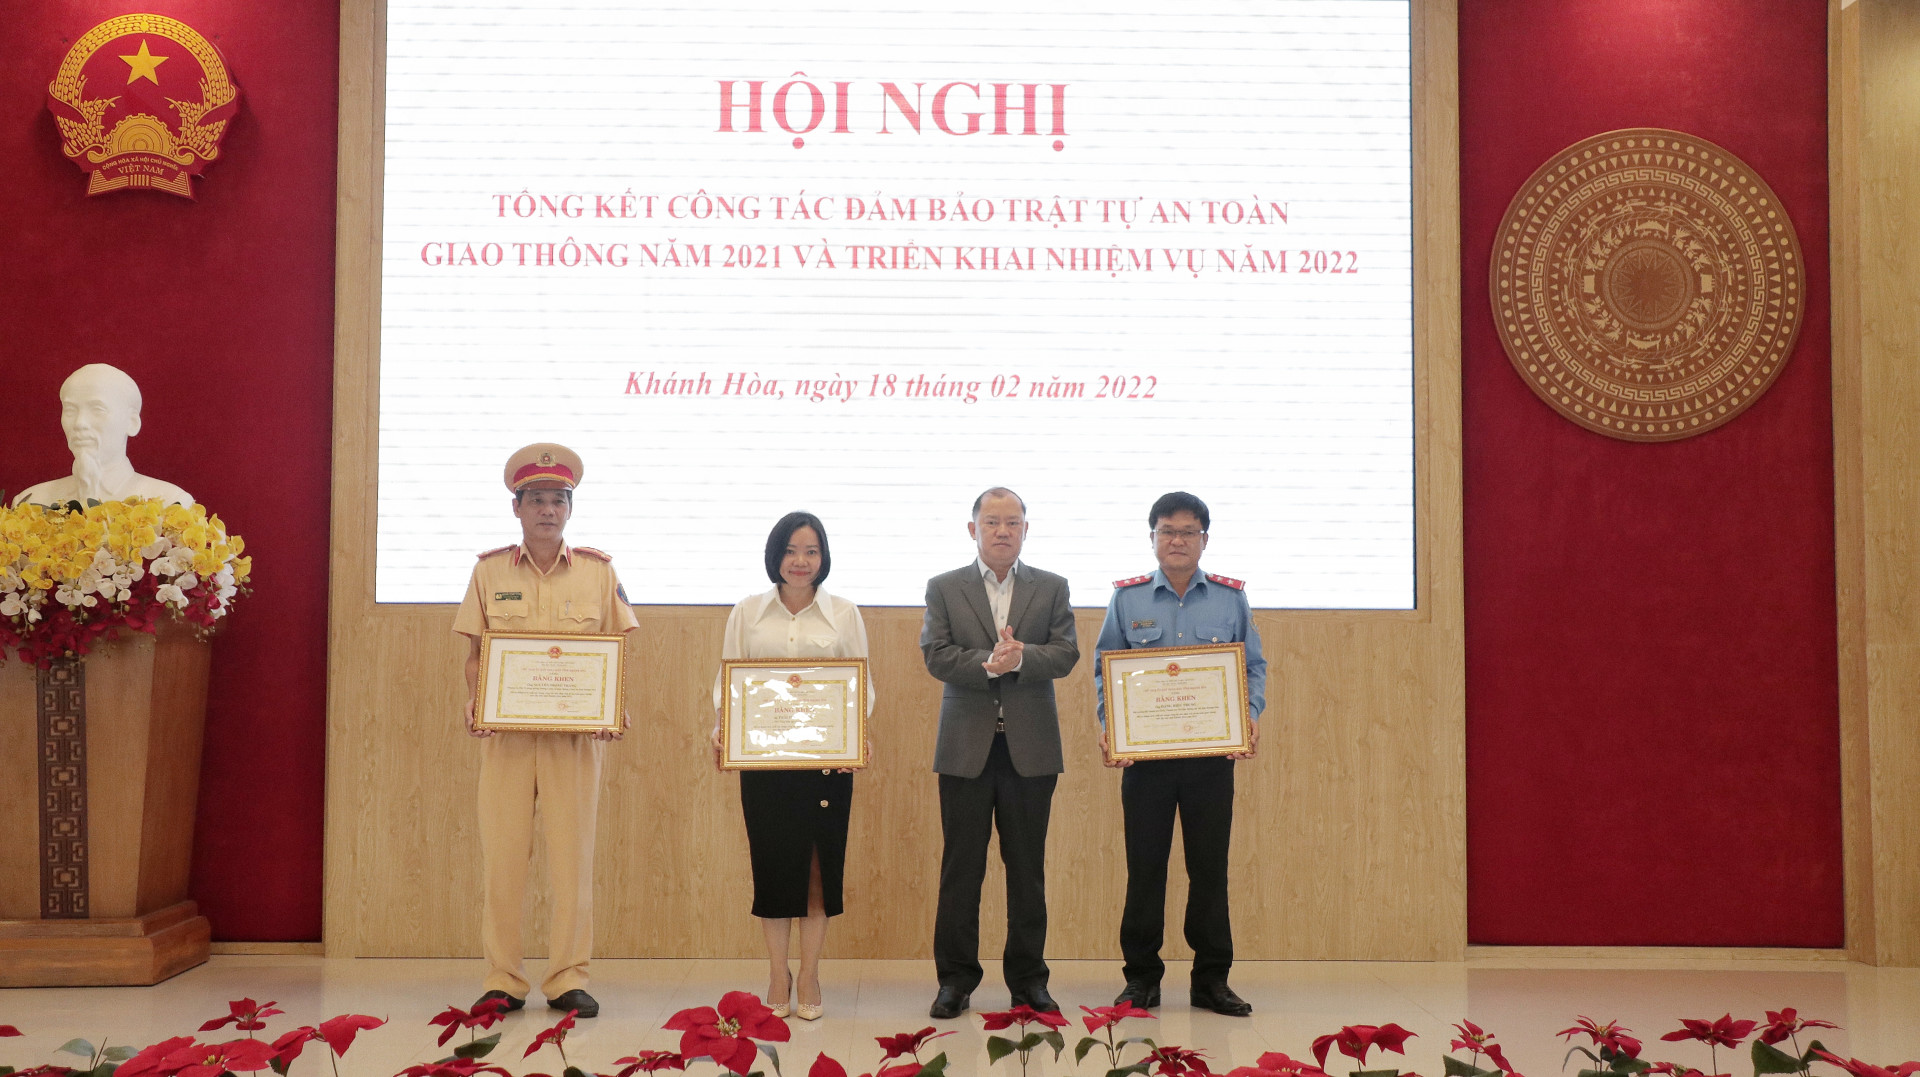 Ông Nguyễn Anh Tuấn - Phó Chủ tịch UBND tỉnh trao bằng khen cho các cá nhân xuất sắc.